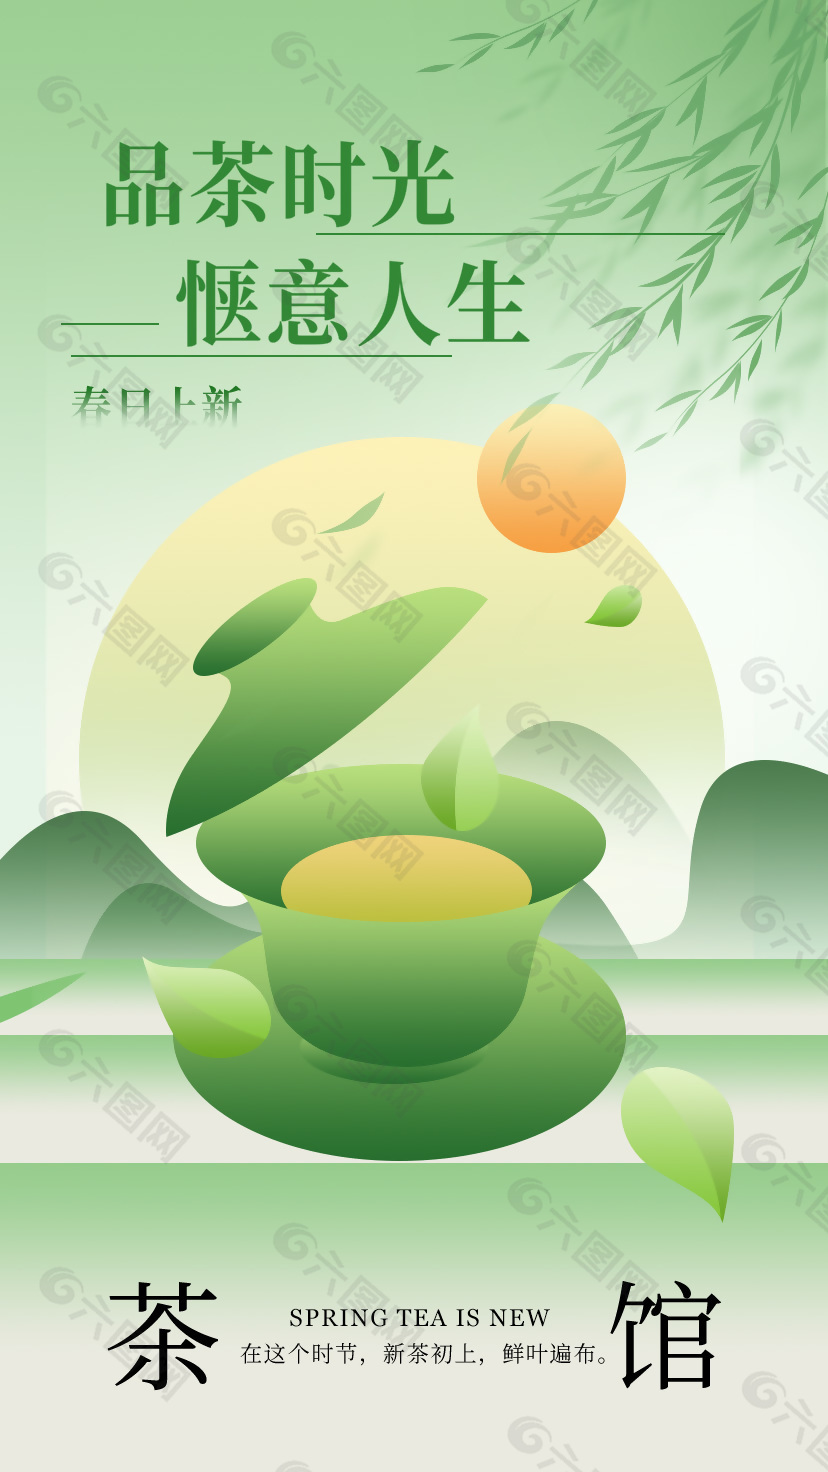 品茶时光惬意人生茶馆宣传海报设计